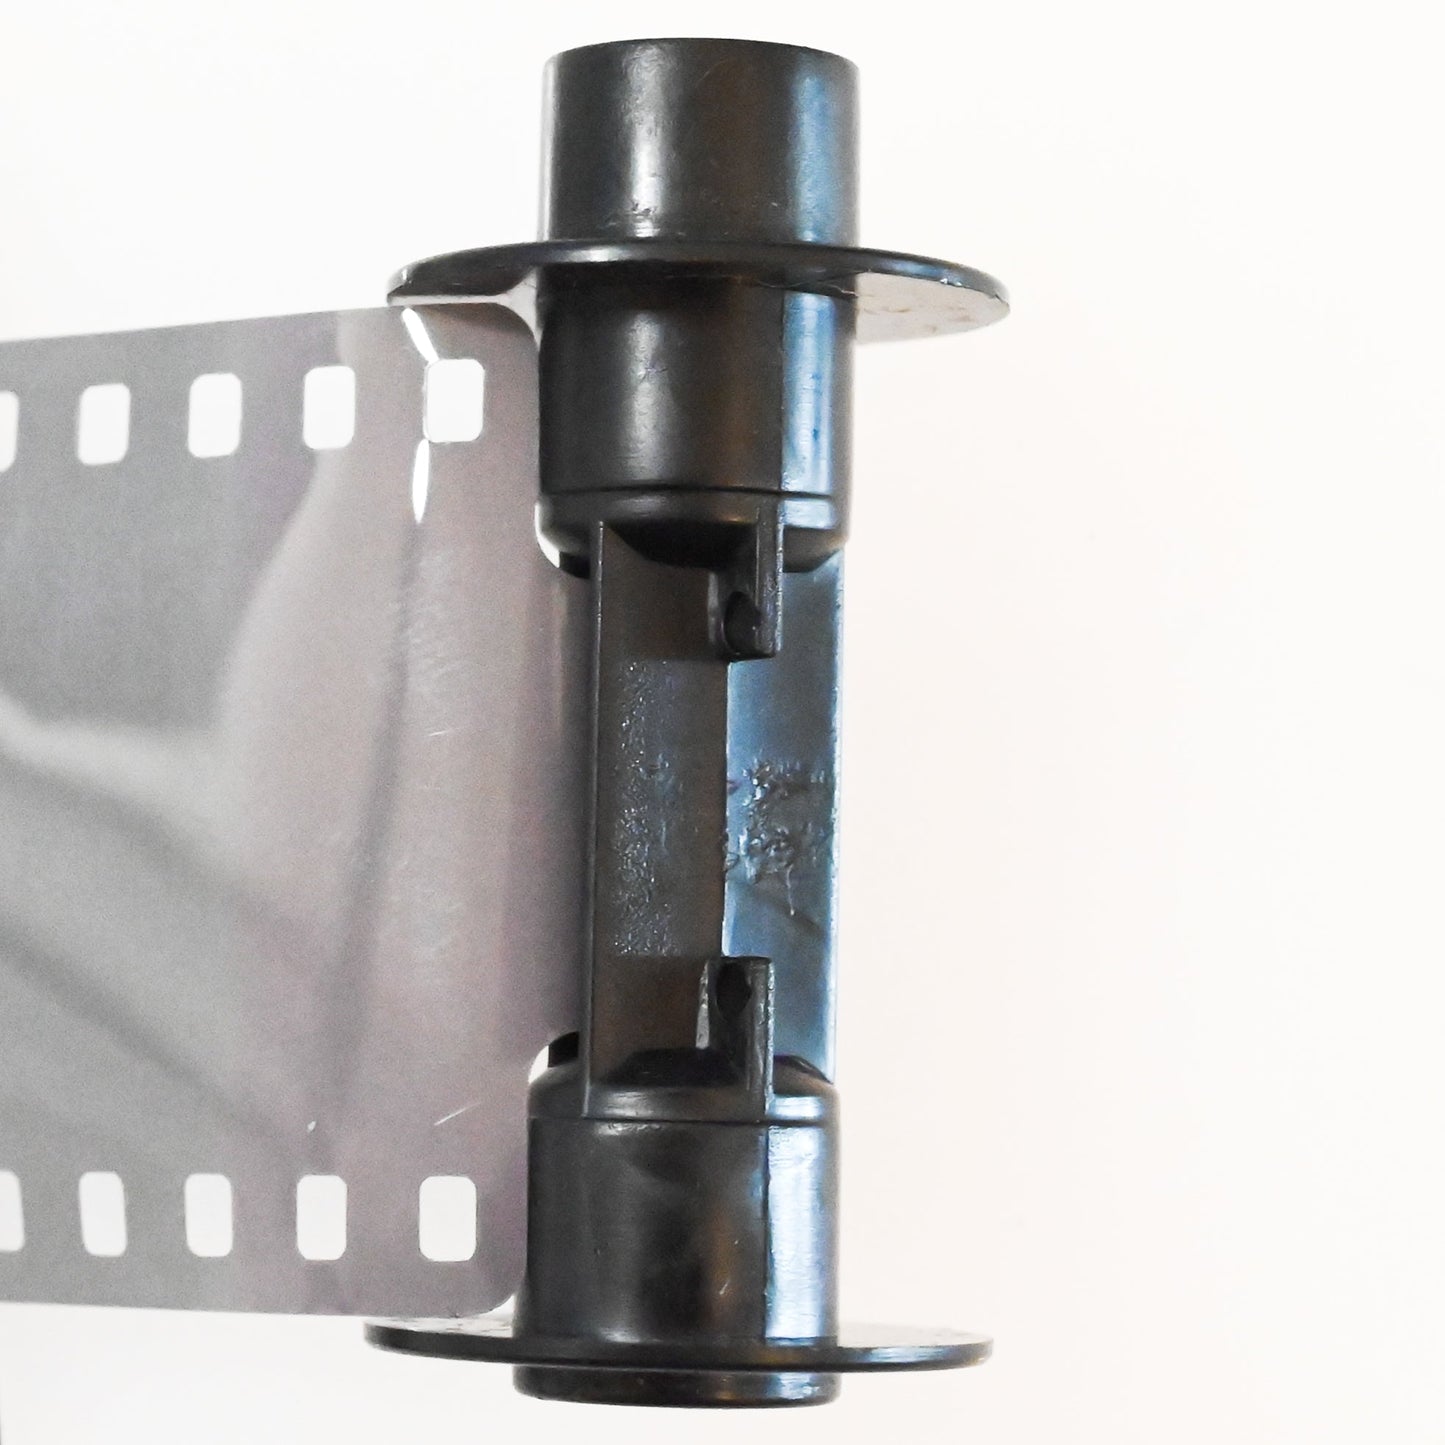 【送料無料 3個セット】マリックス カラーリバーサルフィルム  100D 36枚 MARIX Color reversal NegaFilm